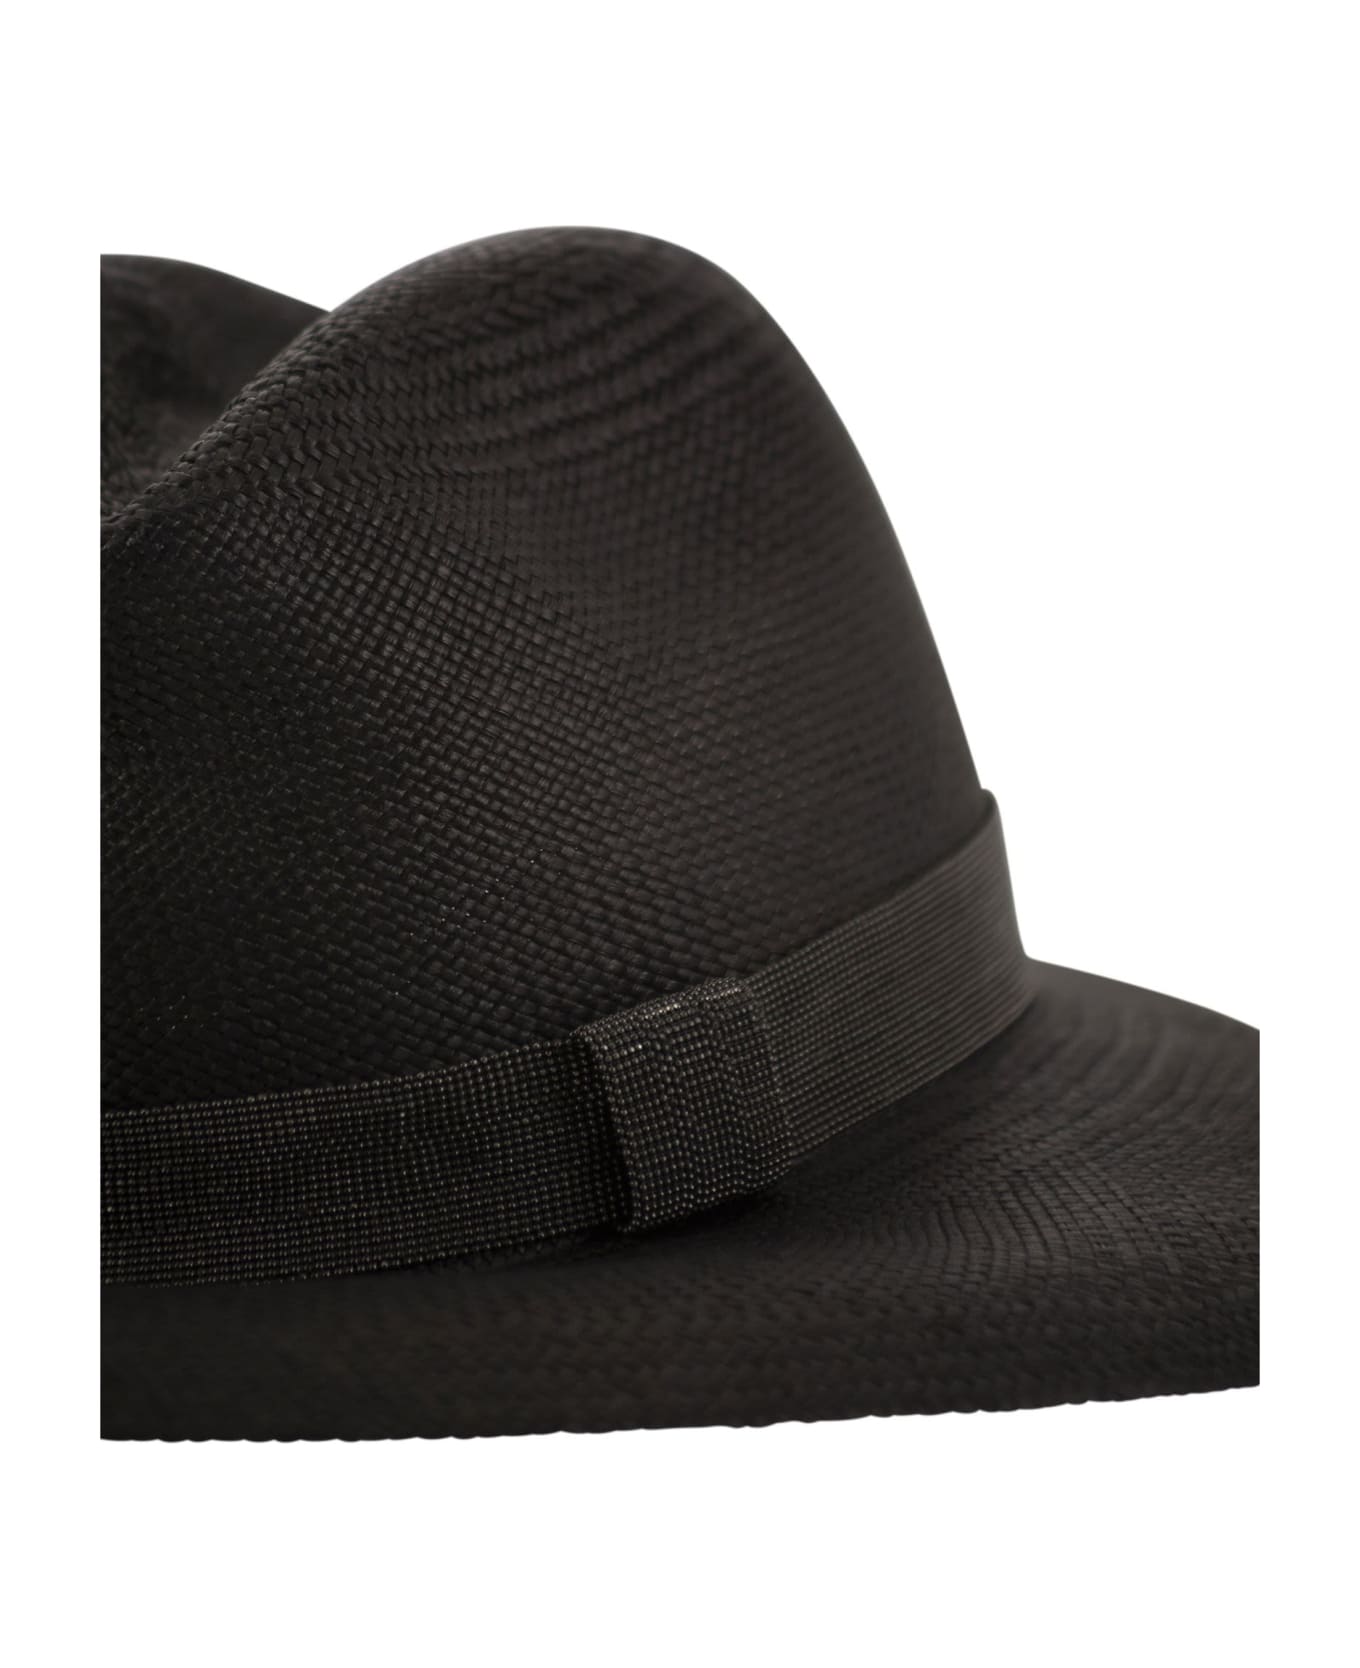 Brunello Cucinelli Straw Hat With Precious Band - Black 帽子